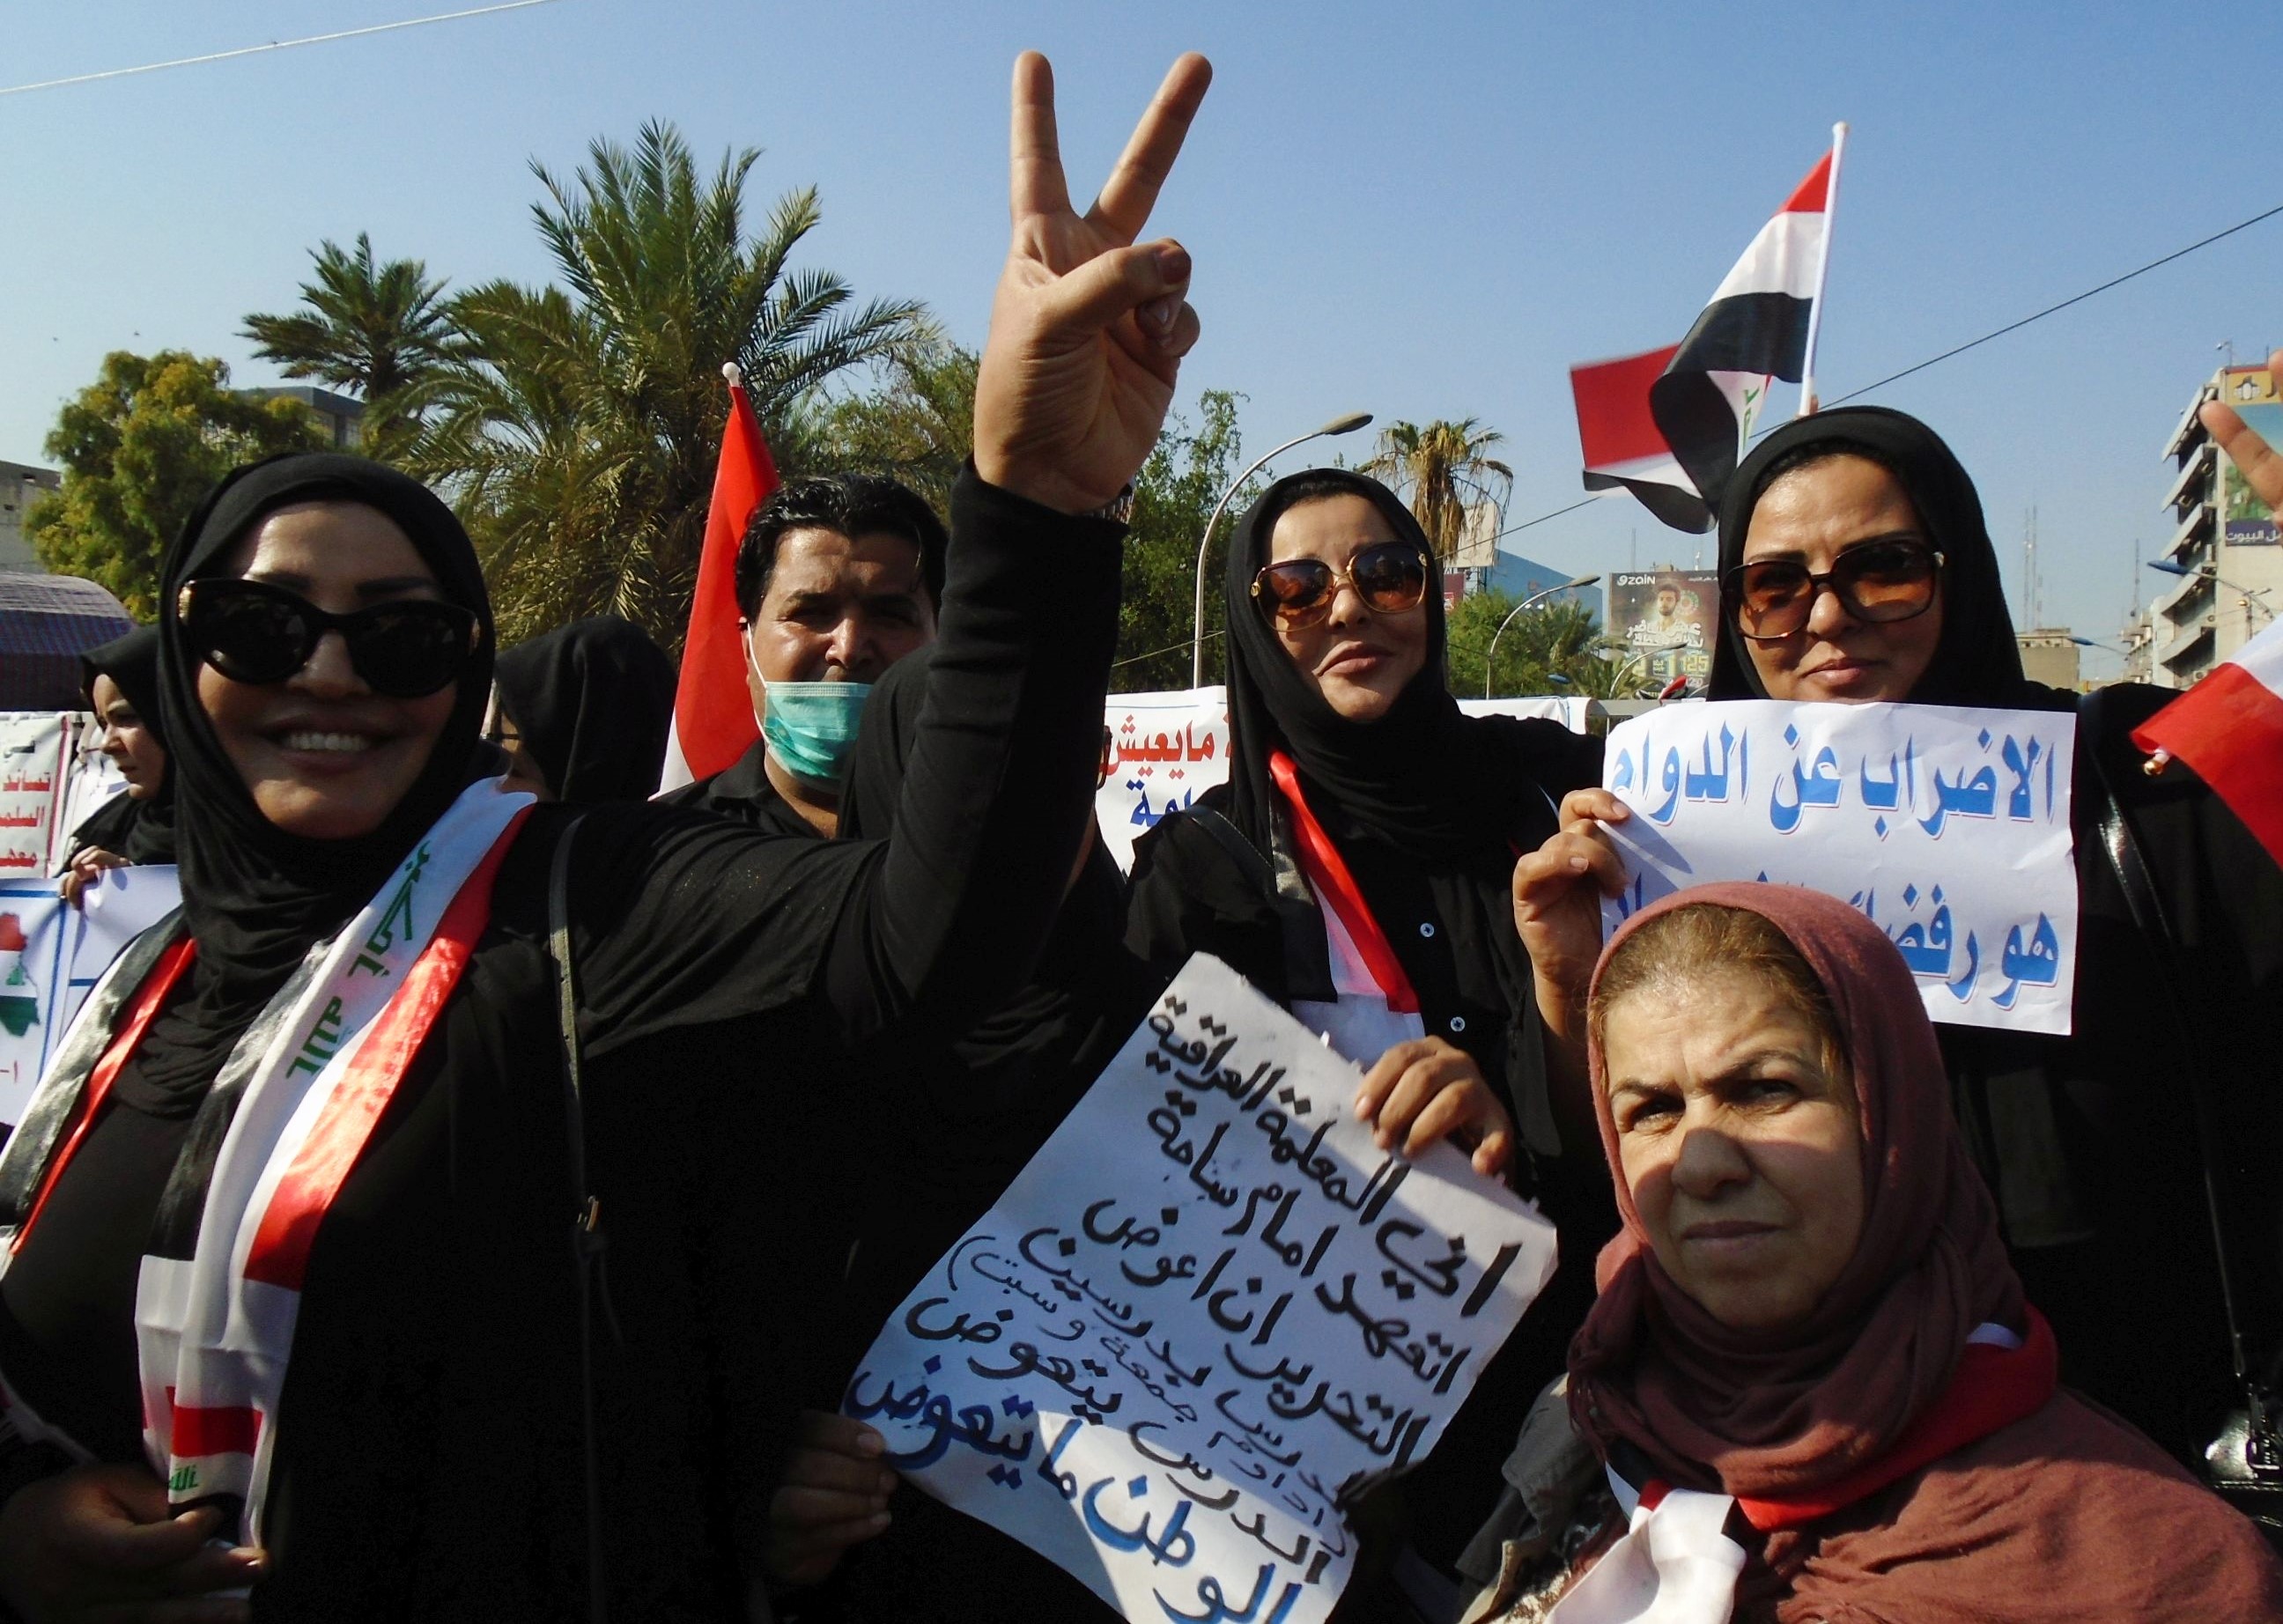 احتجاجات ضد الحكومة في ساحة التحرير - بغداد العراق. Foto: Birgit Svensson